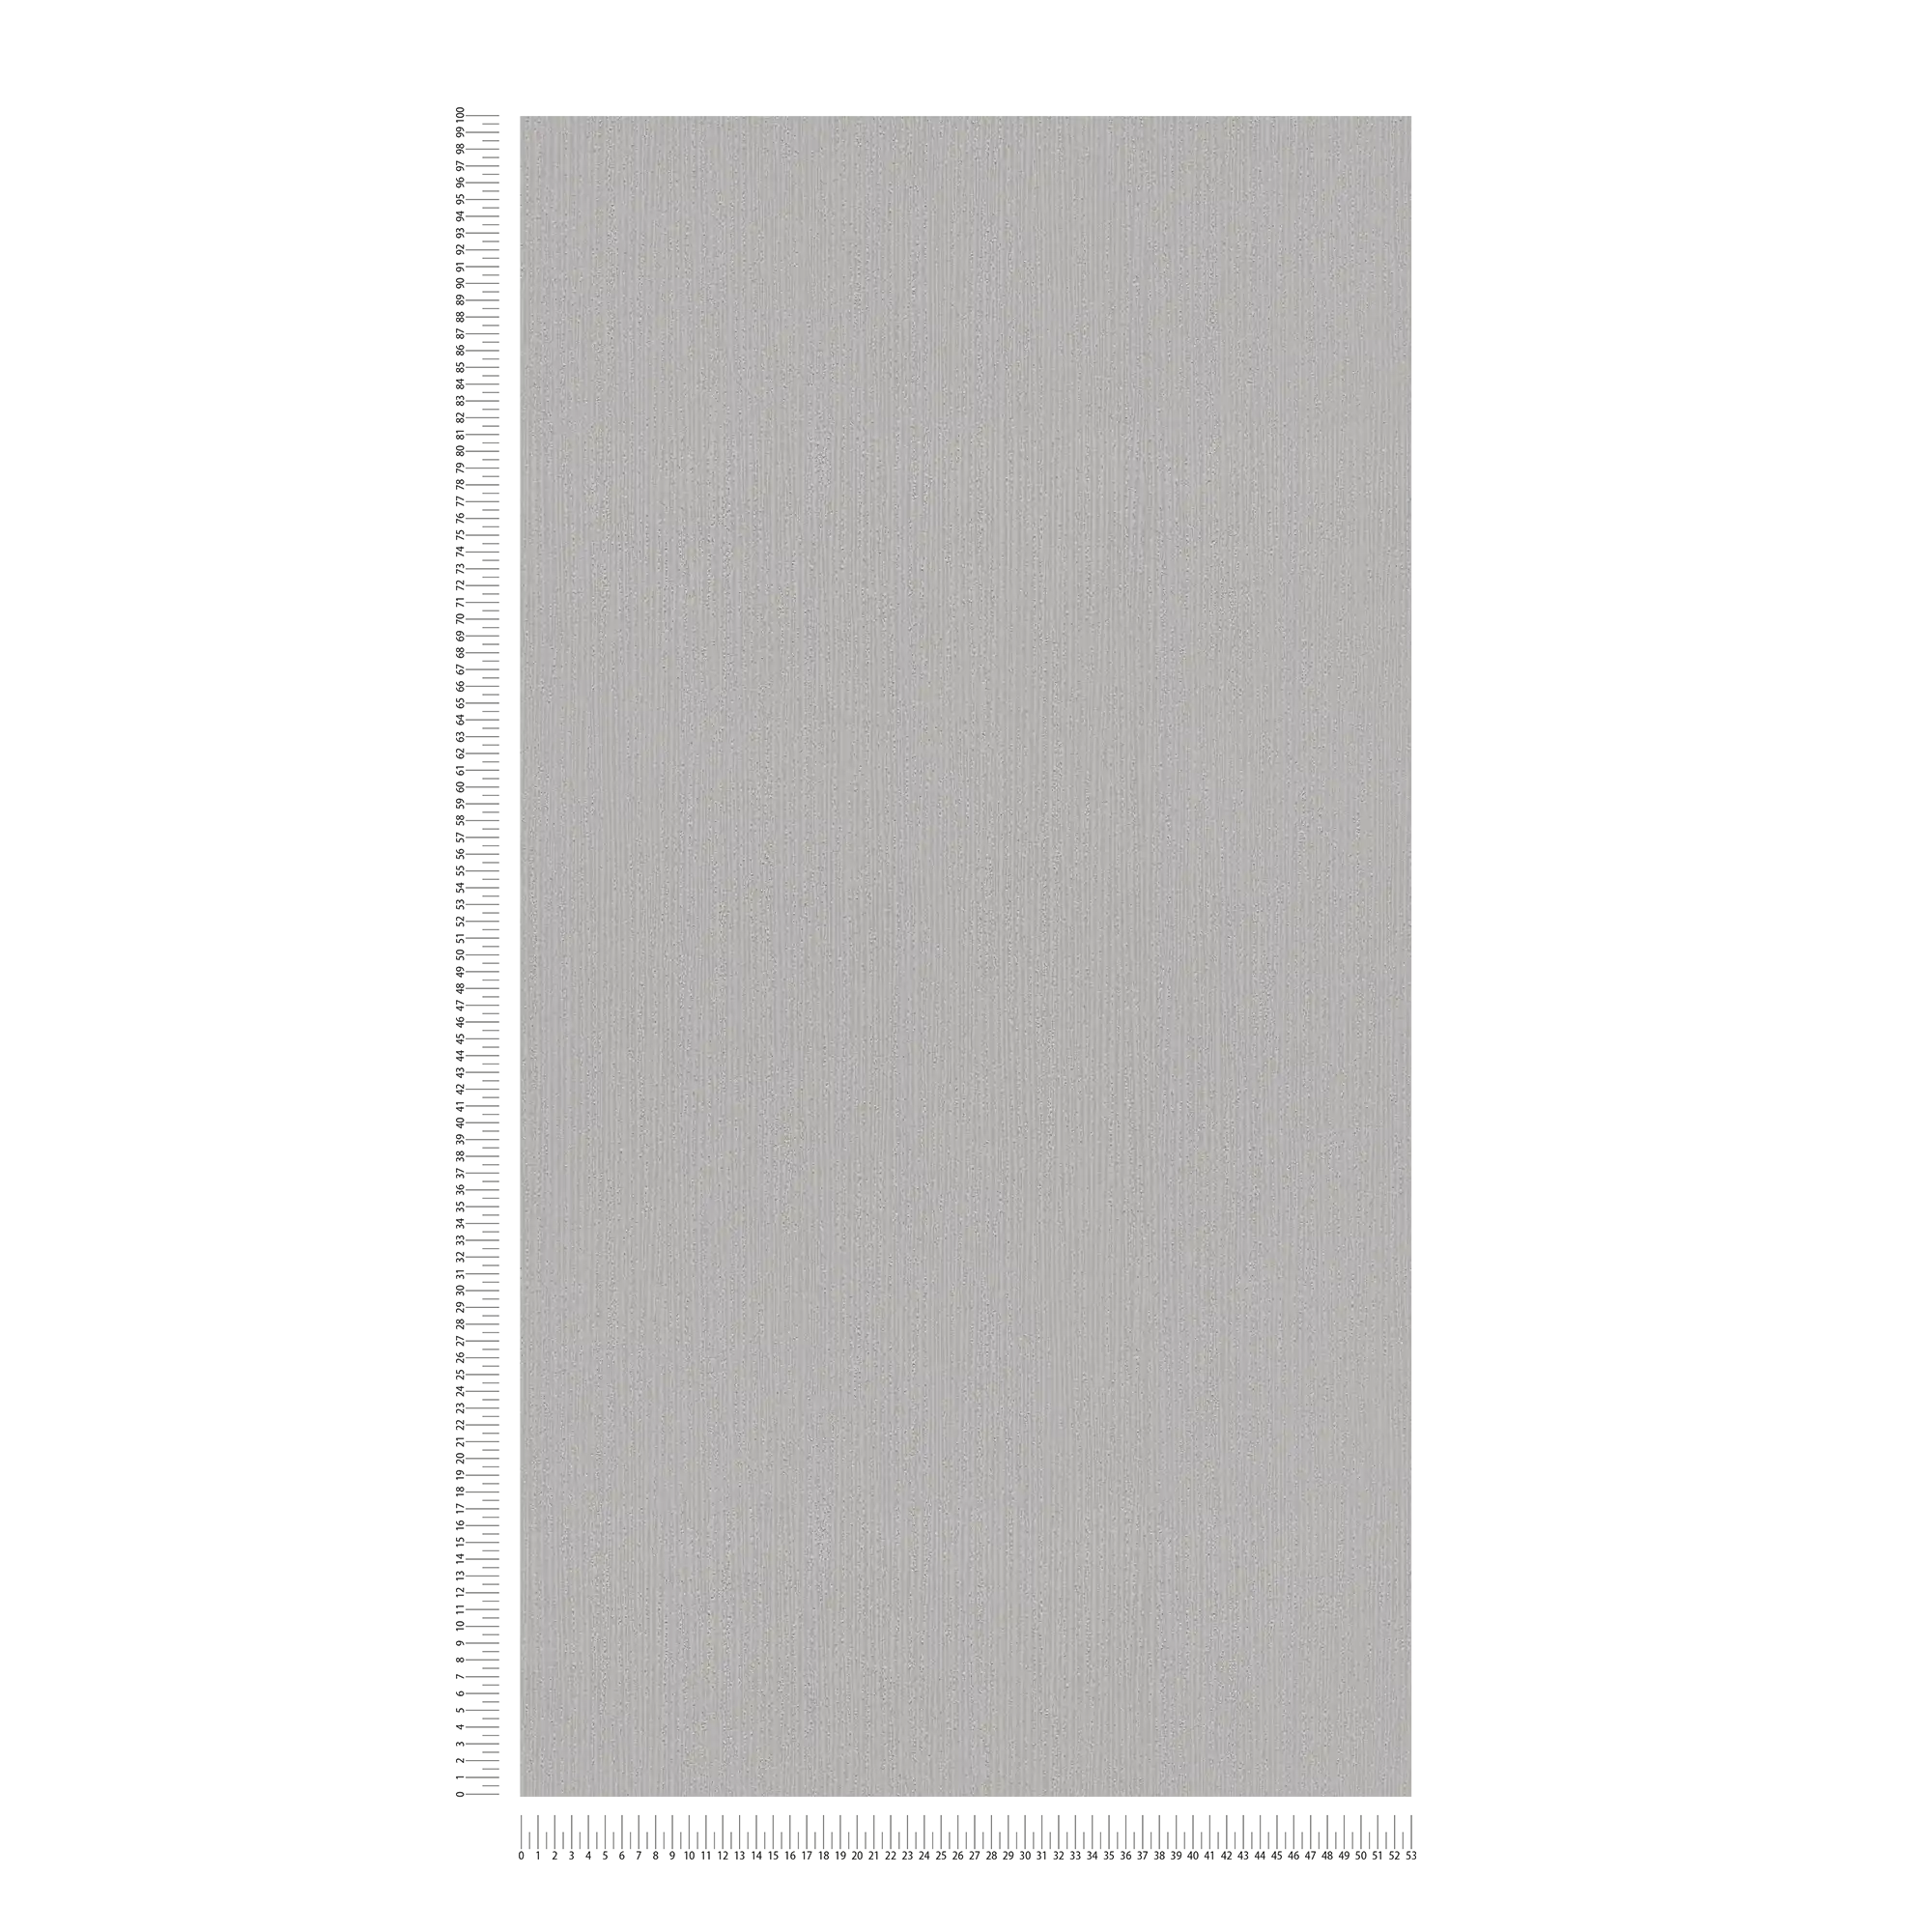             Papel pintado texturado gris claro con motivo de textura tono sobre tono, gris satinado
        